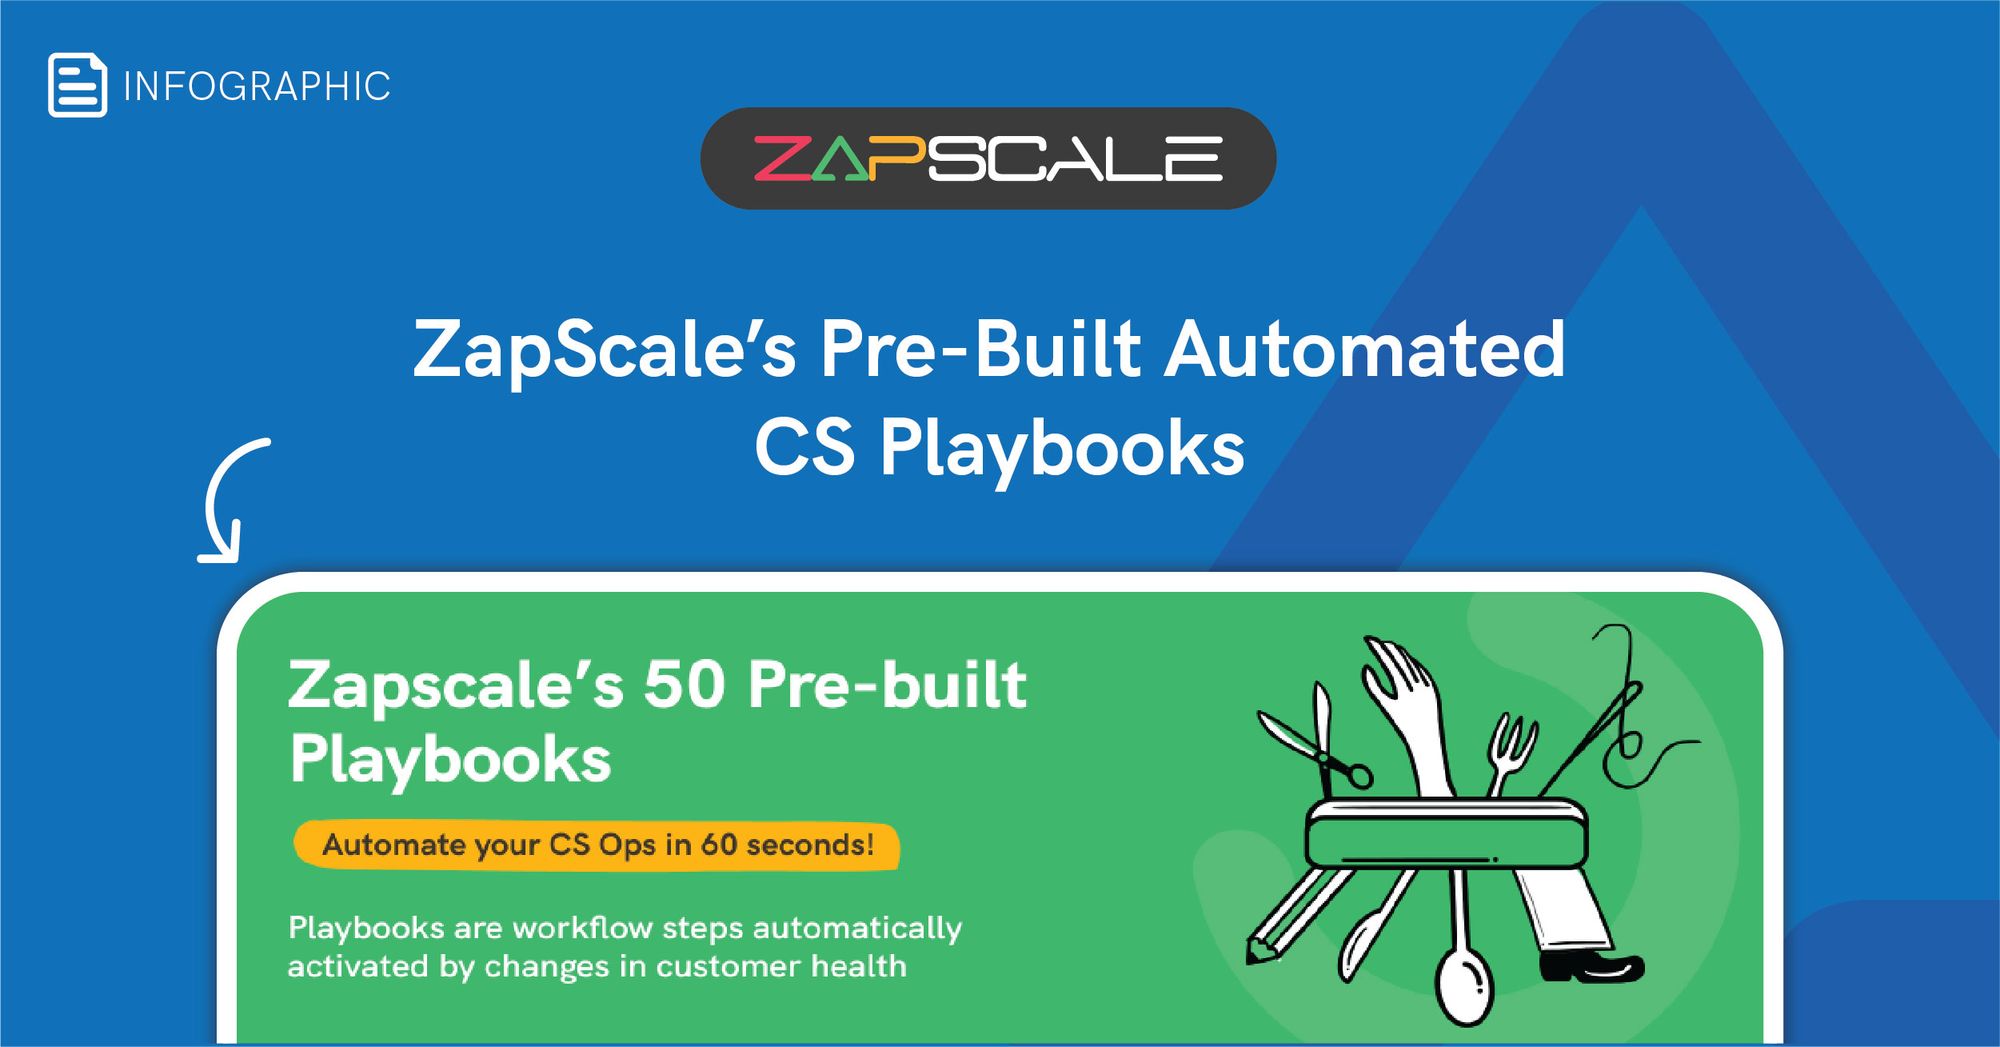 ZapScale’s 50 Pre-built Playbooks